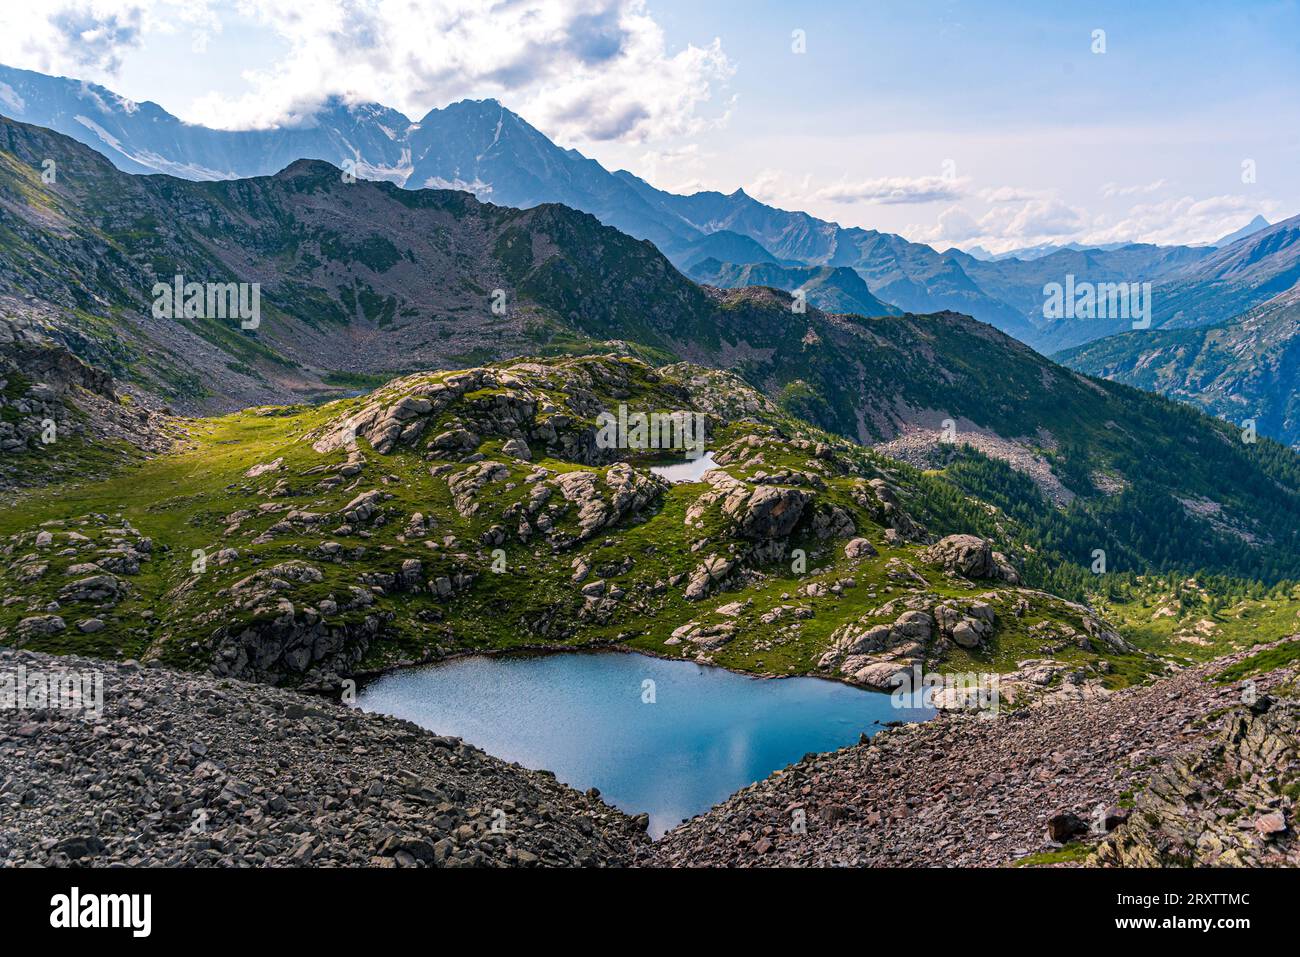 Wunderschöner namenloser Bergblick von Cima Verosso an der Grenze von Italien und der Schweiz, Zwischbergen, Wallis, Schweiz, Europa Stockfoto